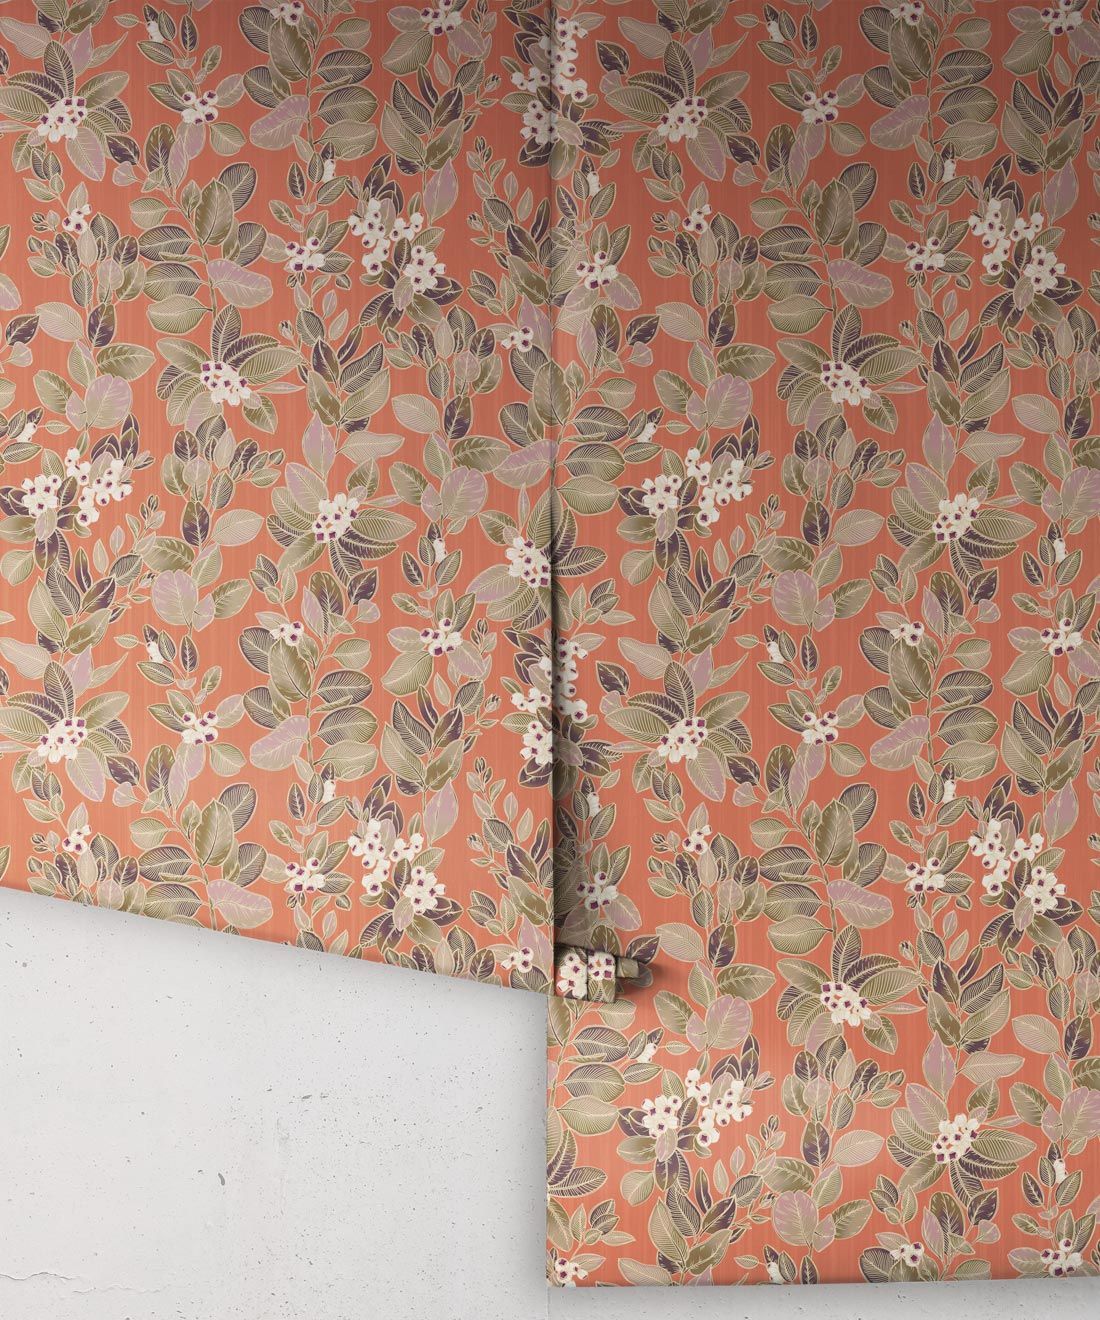 Eucalyptus Wallpaper • Eloise Short • Vintage Floral Wallpaper • Granny Chic Wallpaper • Grandmillennial Style Wallpaper • terracotta • Rolls